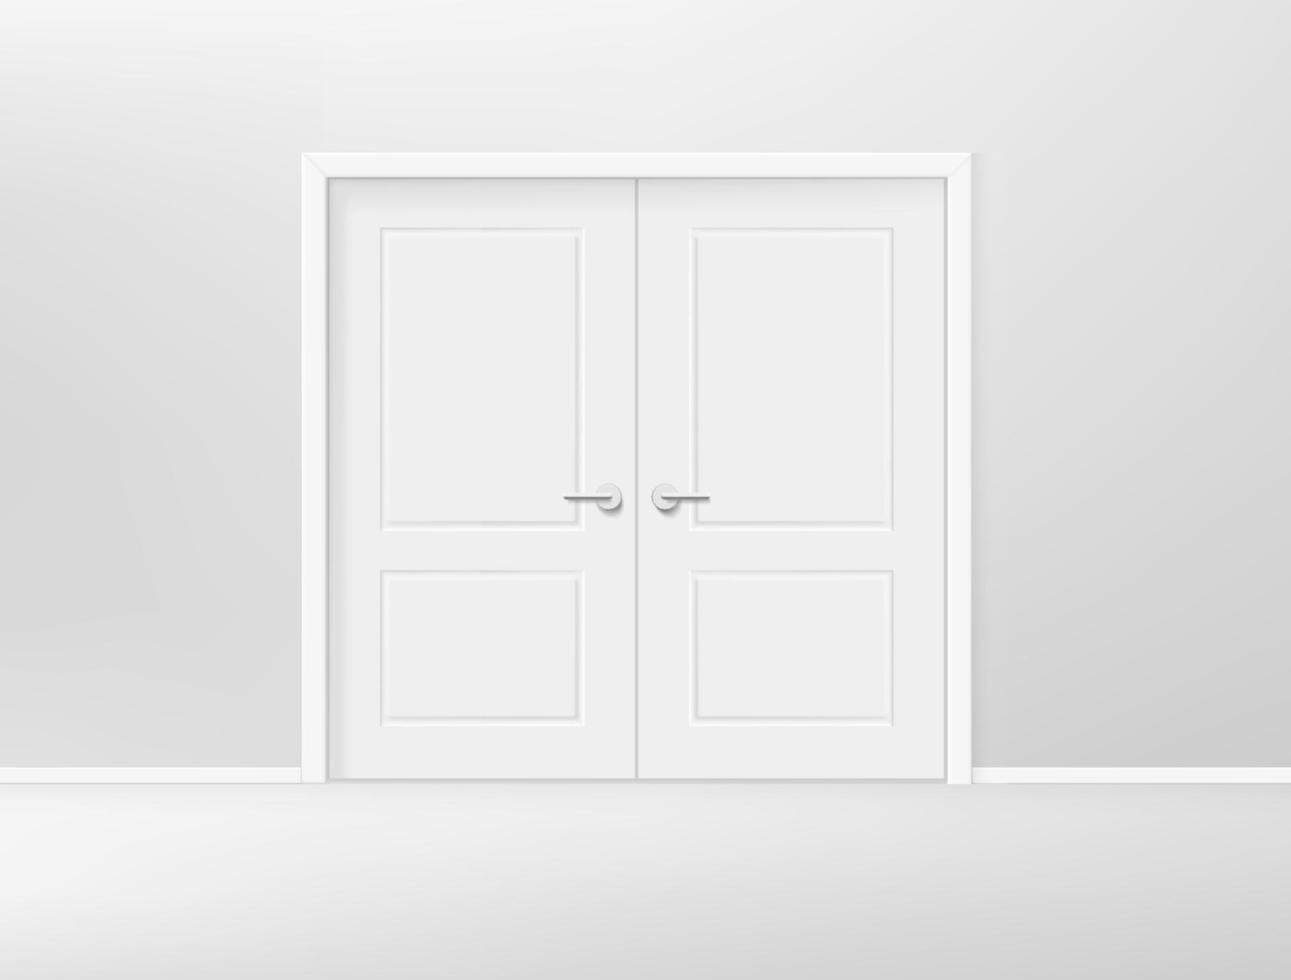 dubbeldörr ingång i en korridor. realistisk 3d-stil vektorillustration vektor